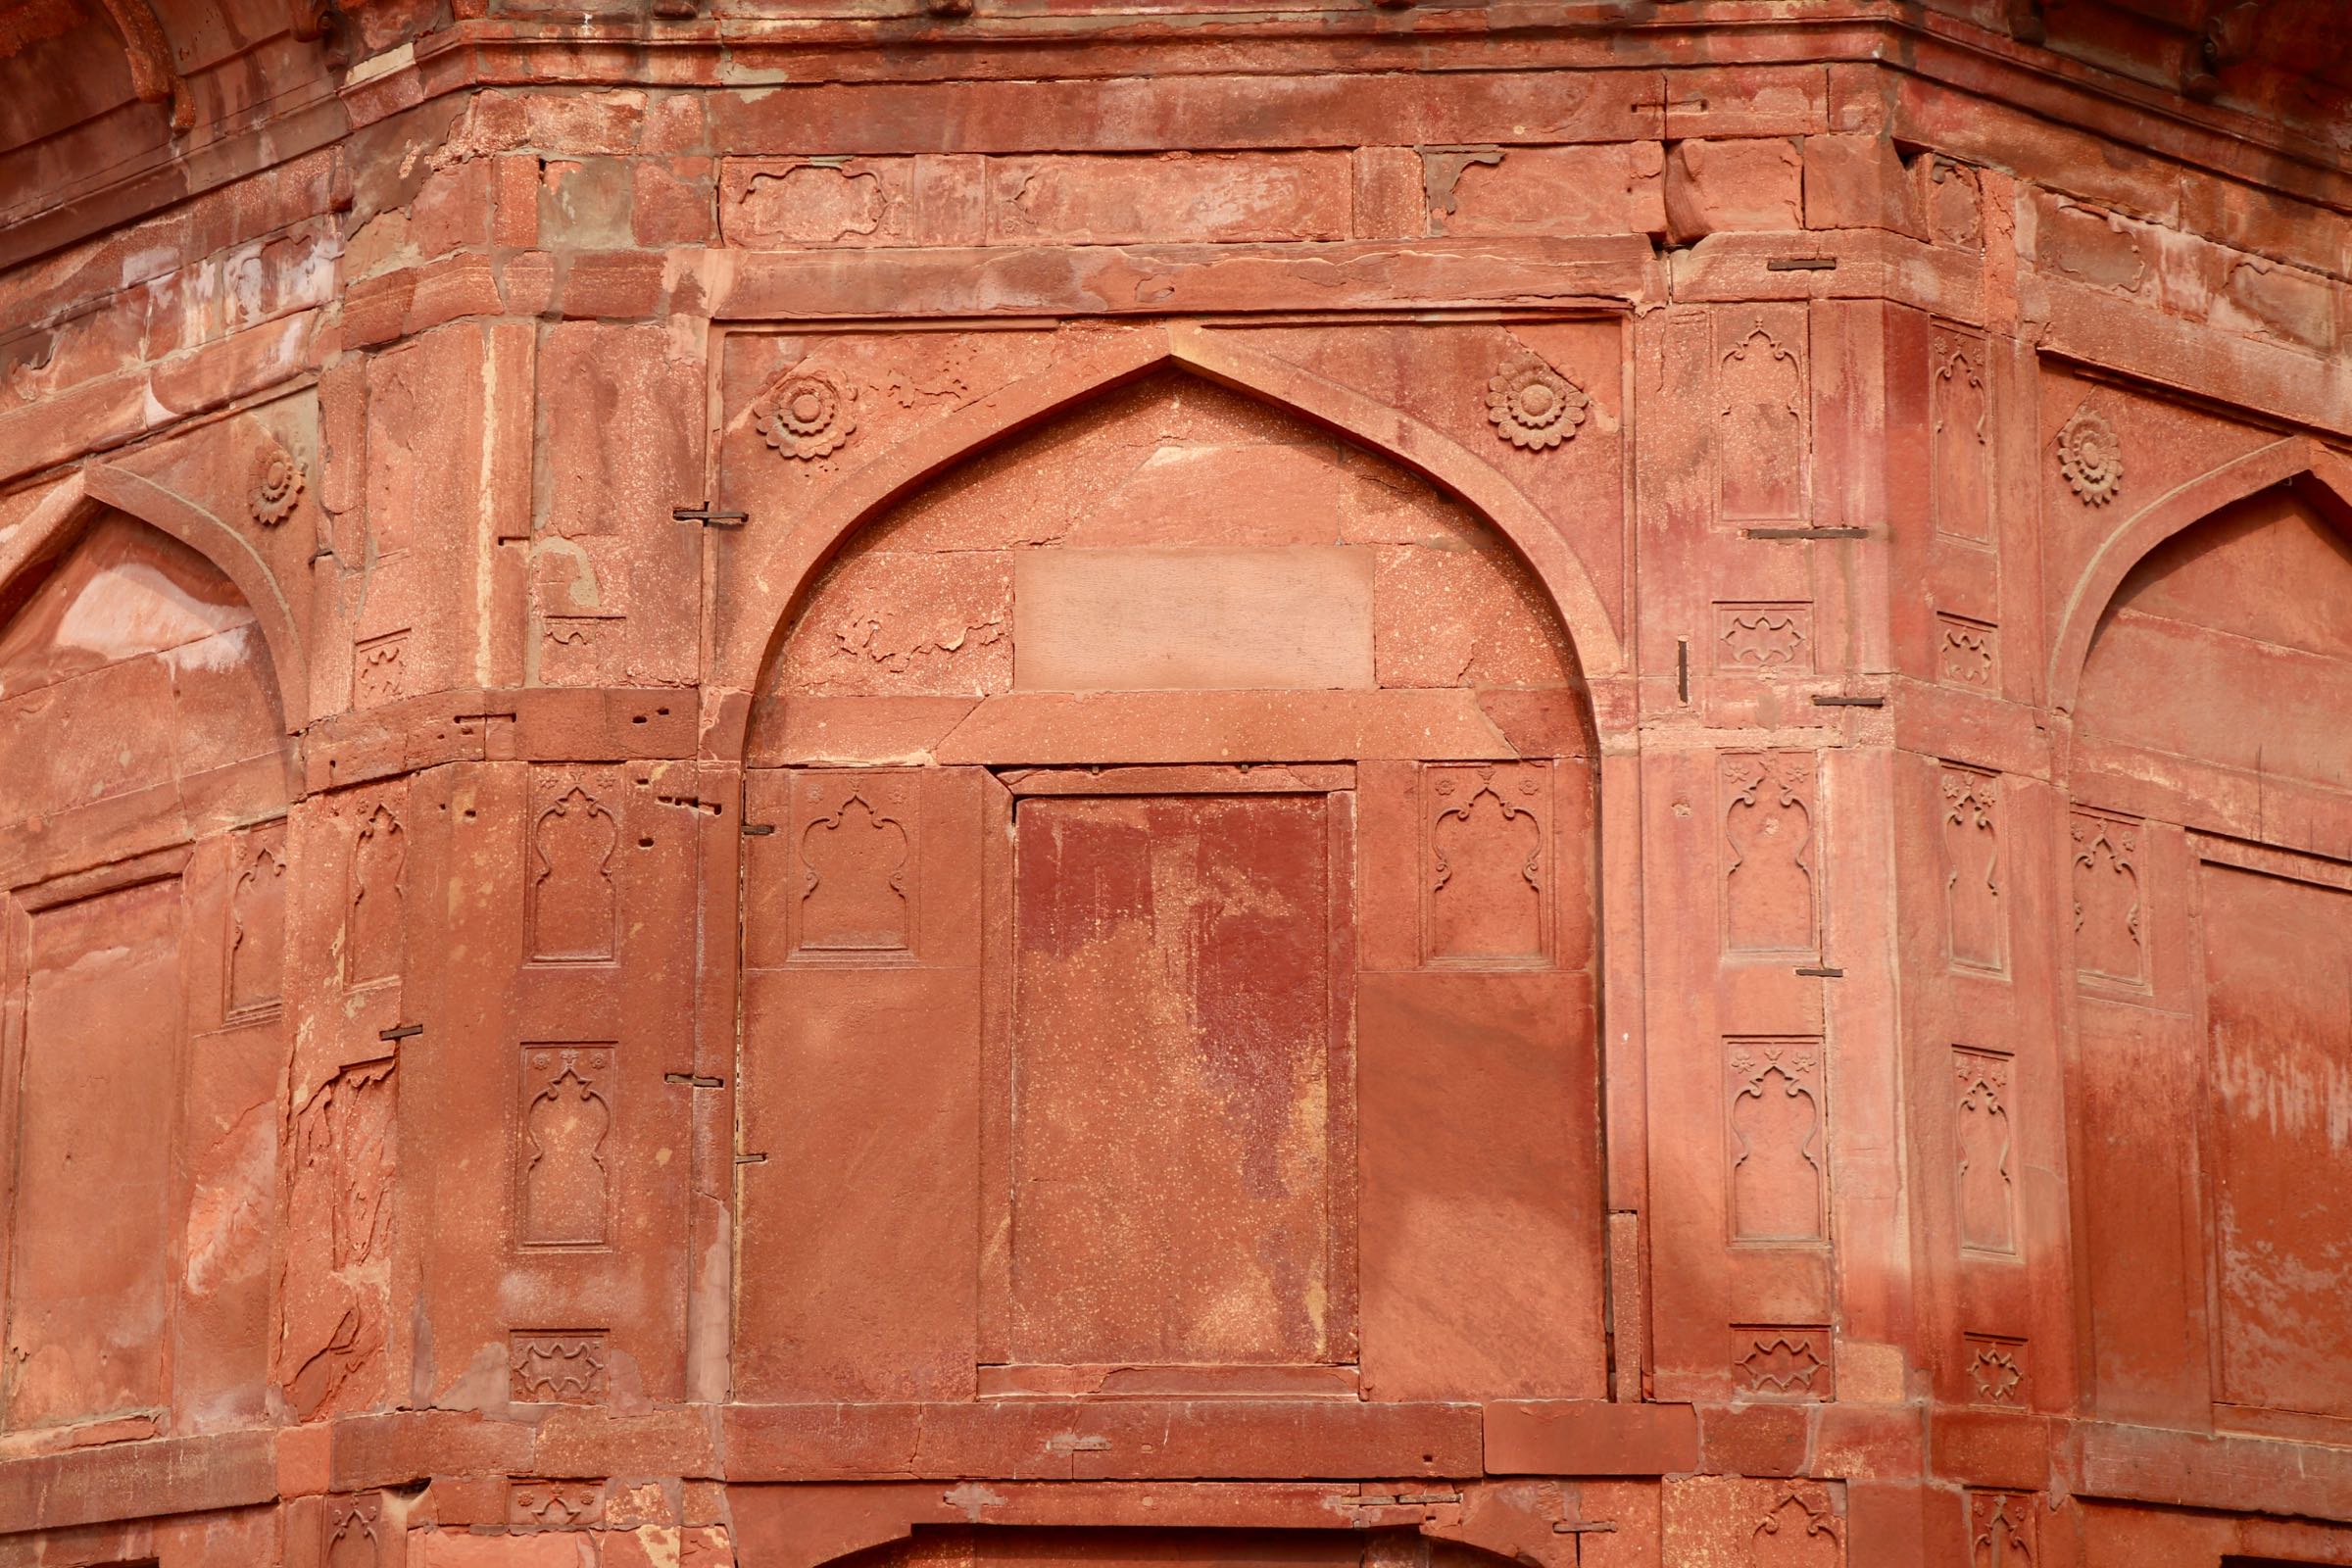 Turm des Lahore-Tors im Roten Fort, Delhi, Indien